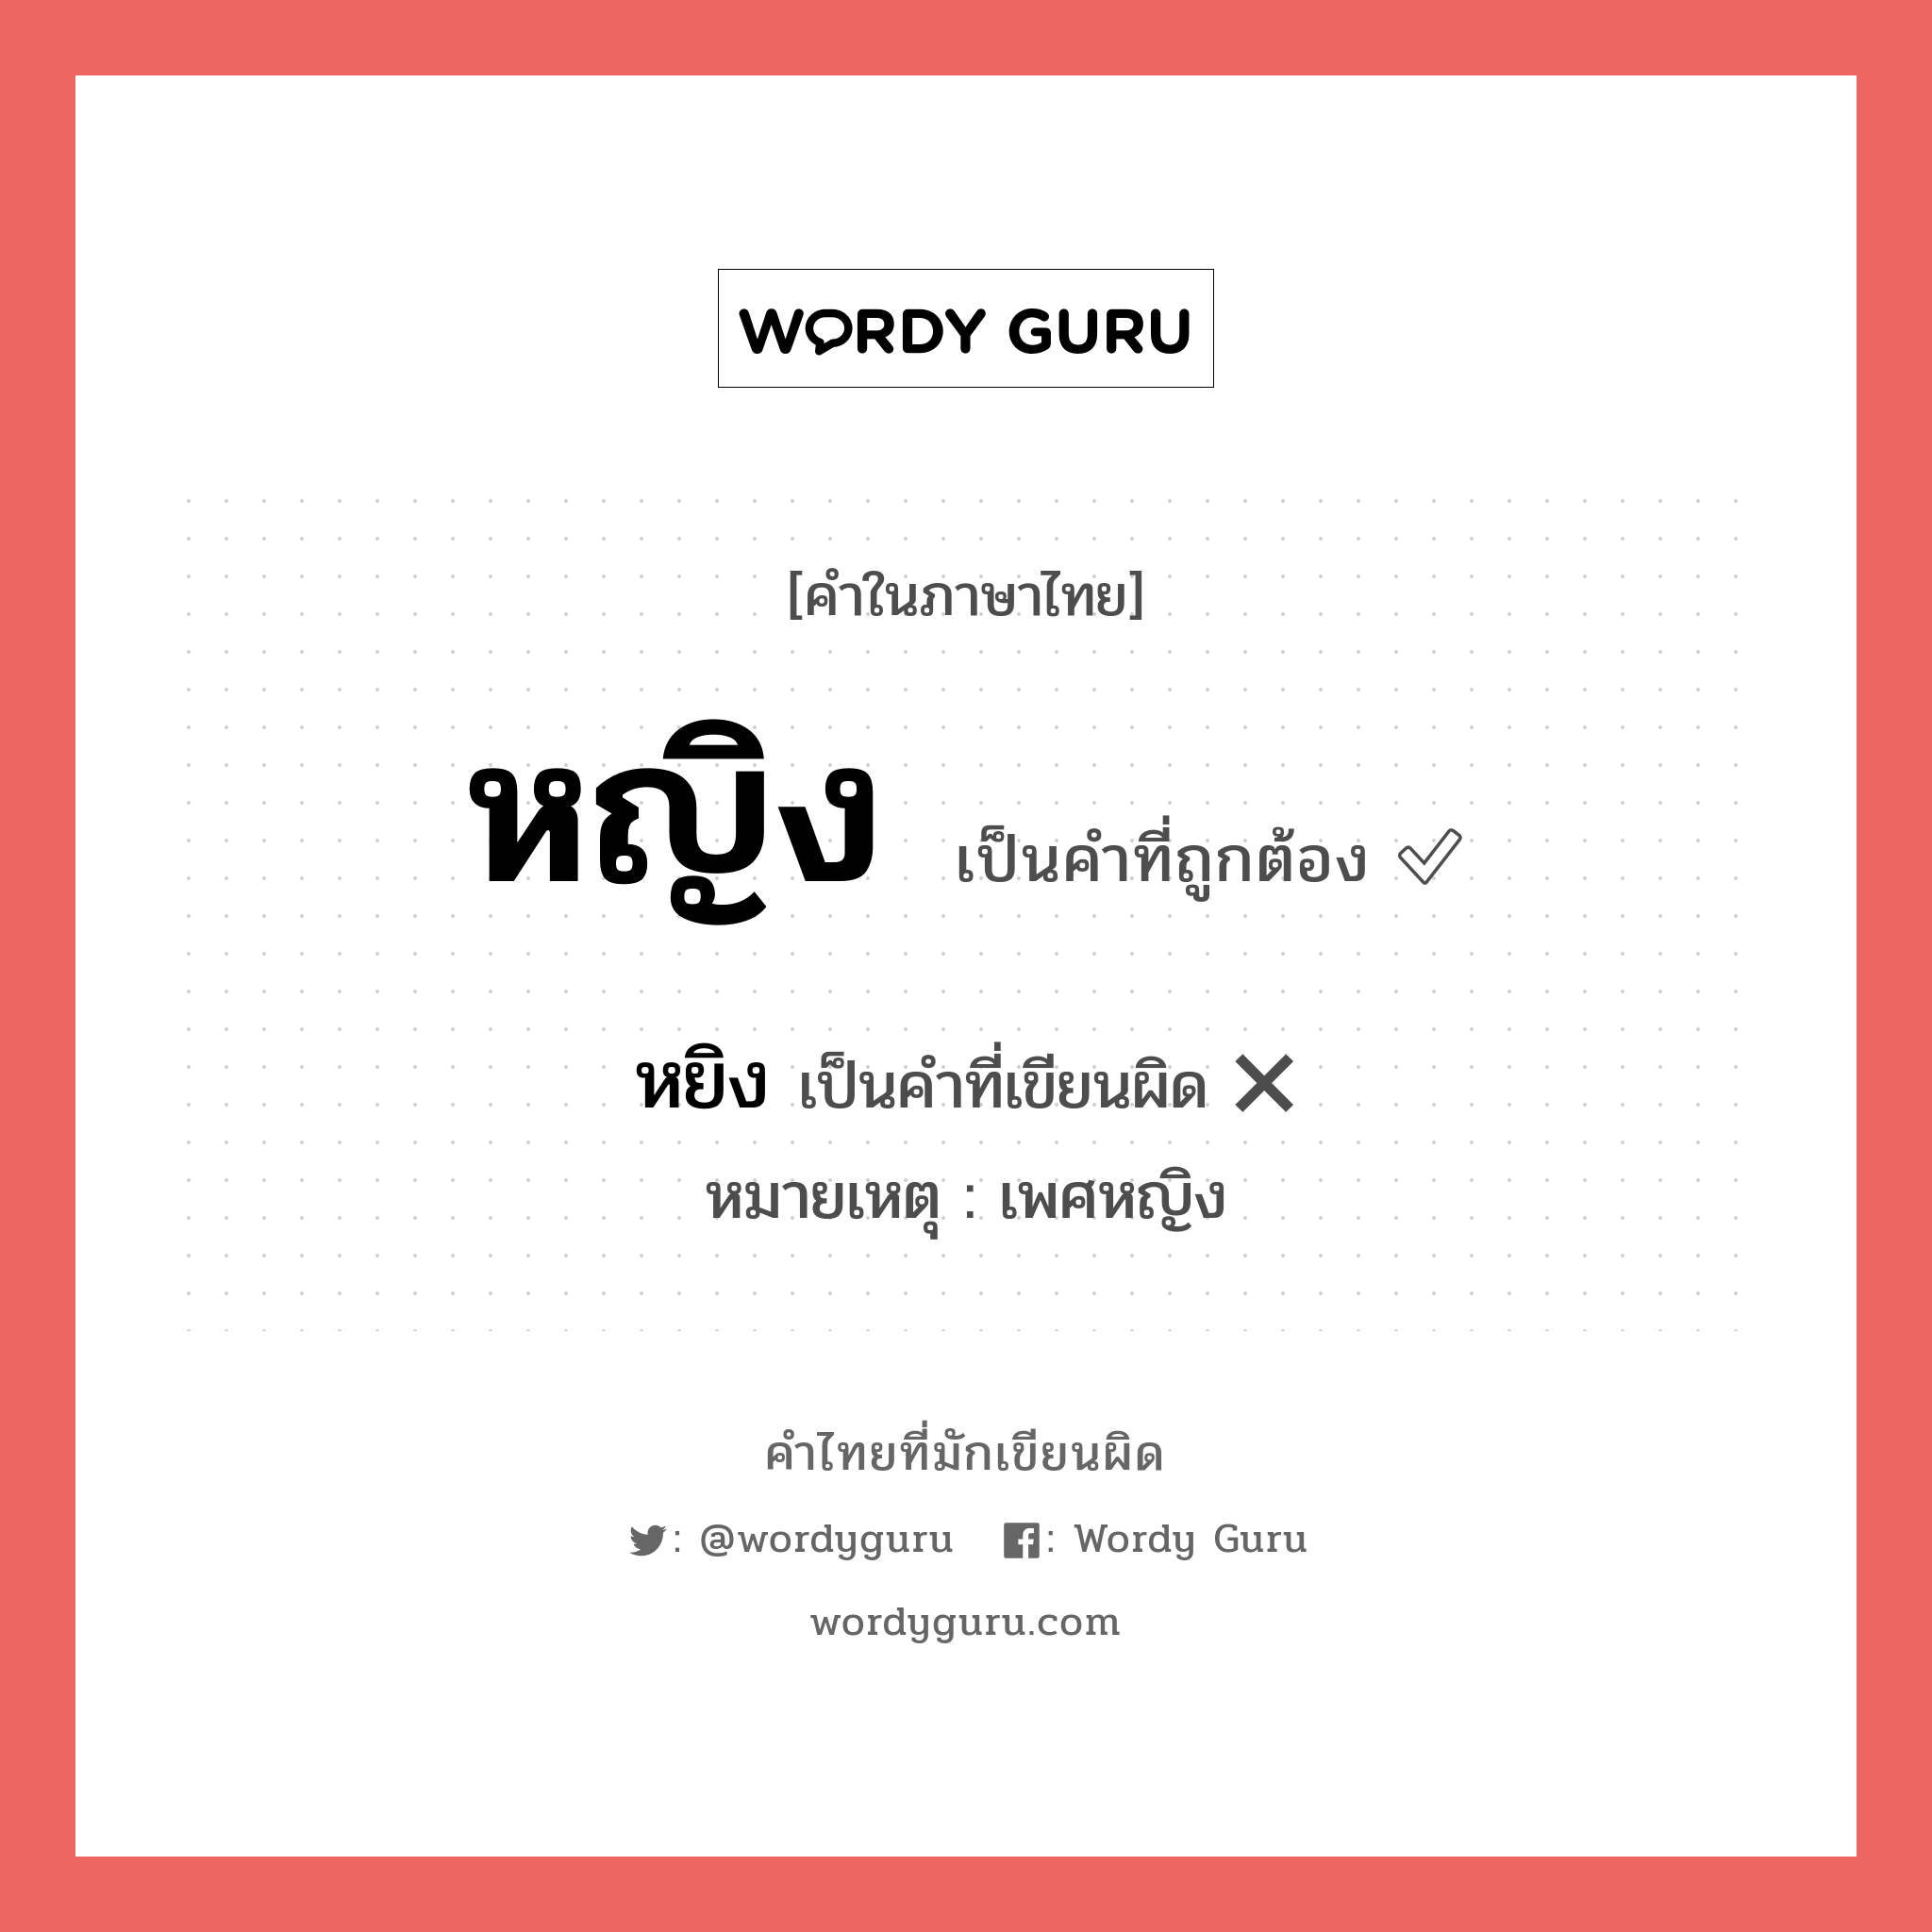 หยิง หรือ หญิง คำไหนเขียนถูก?, คำในภาษาไทยที่มักเขียนผิด หยิง คำที่ผิด ❌ หญิง หมายเหตุ เพศหญิง